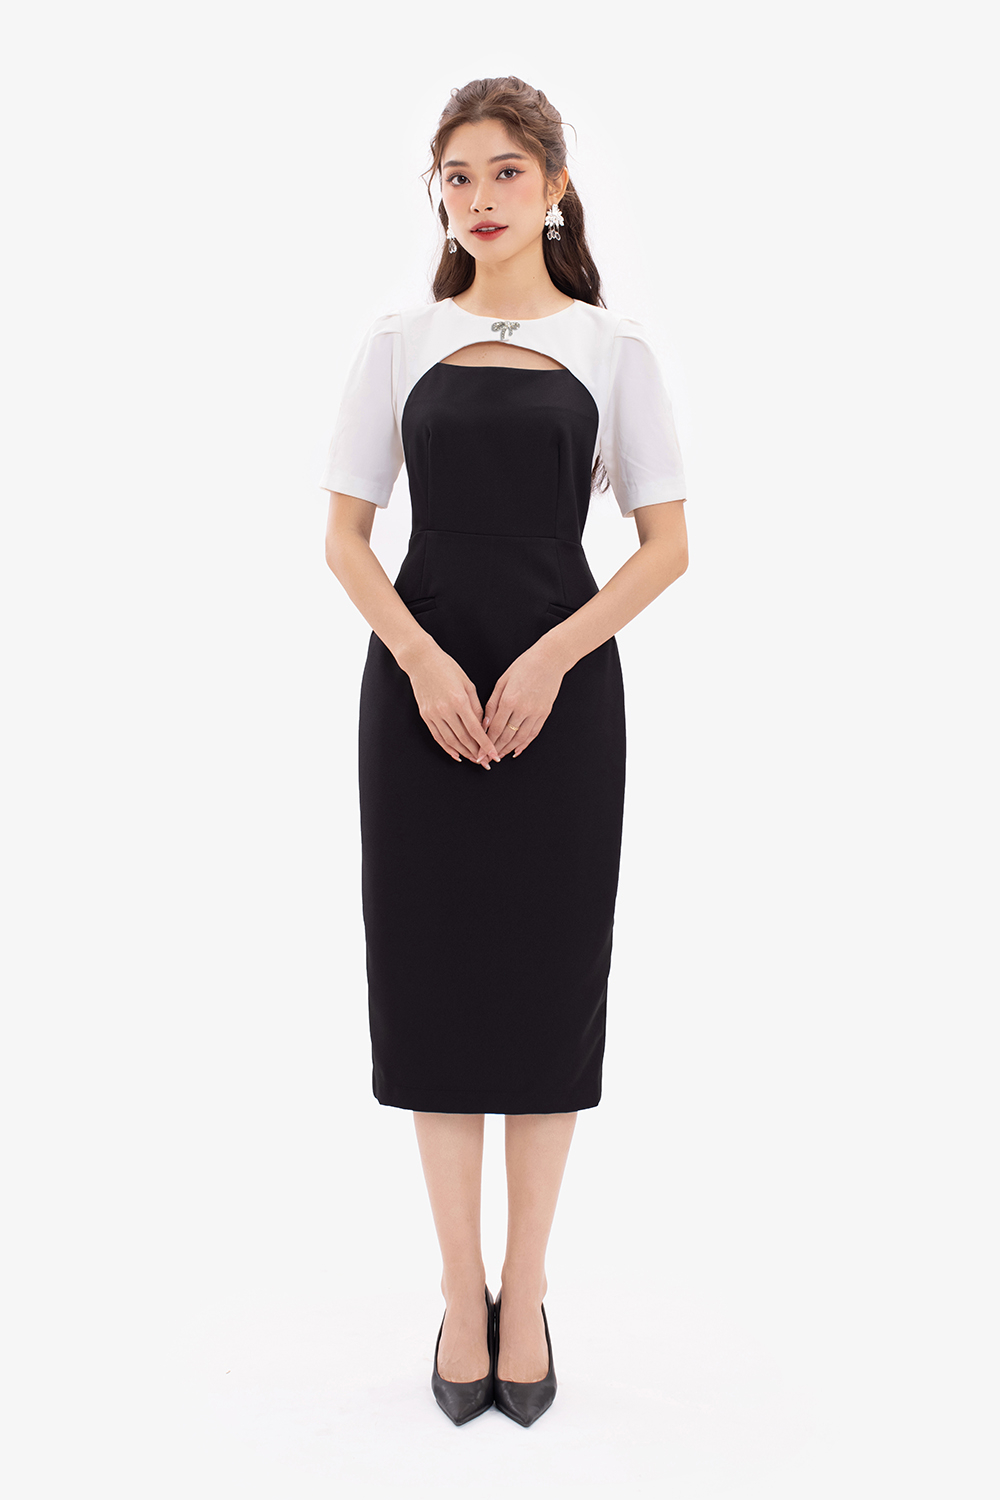 Đầm ôm body lệch vai phối màu trắng đen đầy sang trọng - Hàng đẹp với giá  tốt nhất